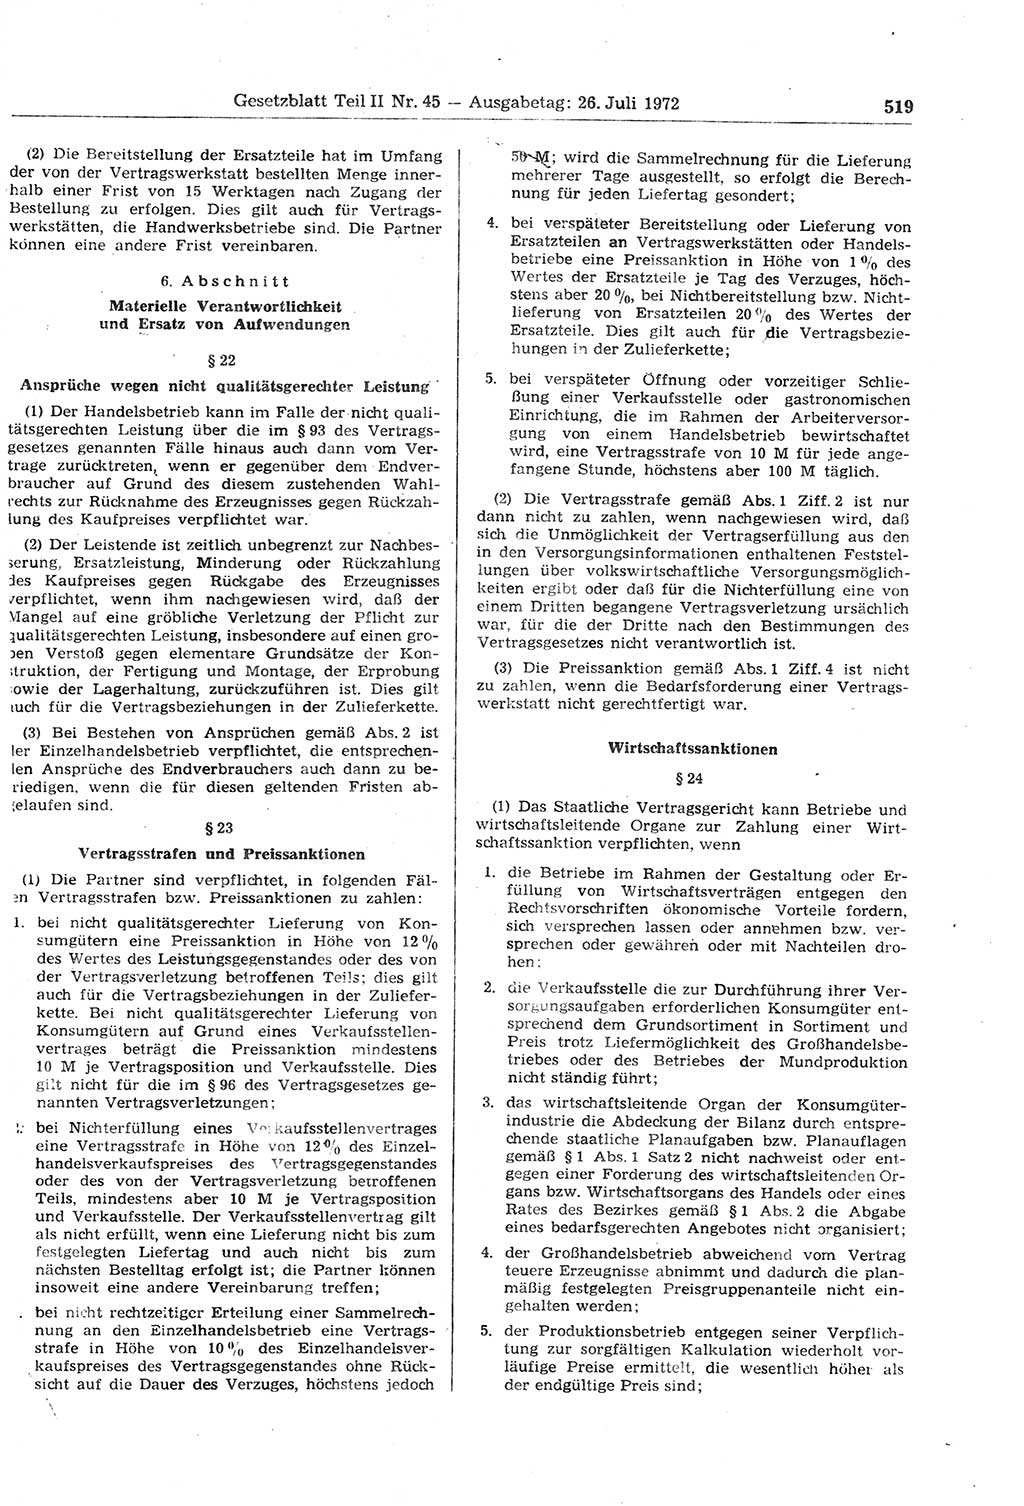 Gesetzblatt (GBl.) der Deutschen Demokratischen Republik (DDR) Teil ⅠⅠ 1972, Seite 519 (GBl. DDR ⅠⅠ 1972, S. 519)